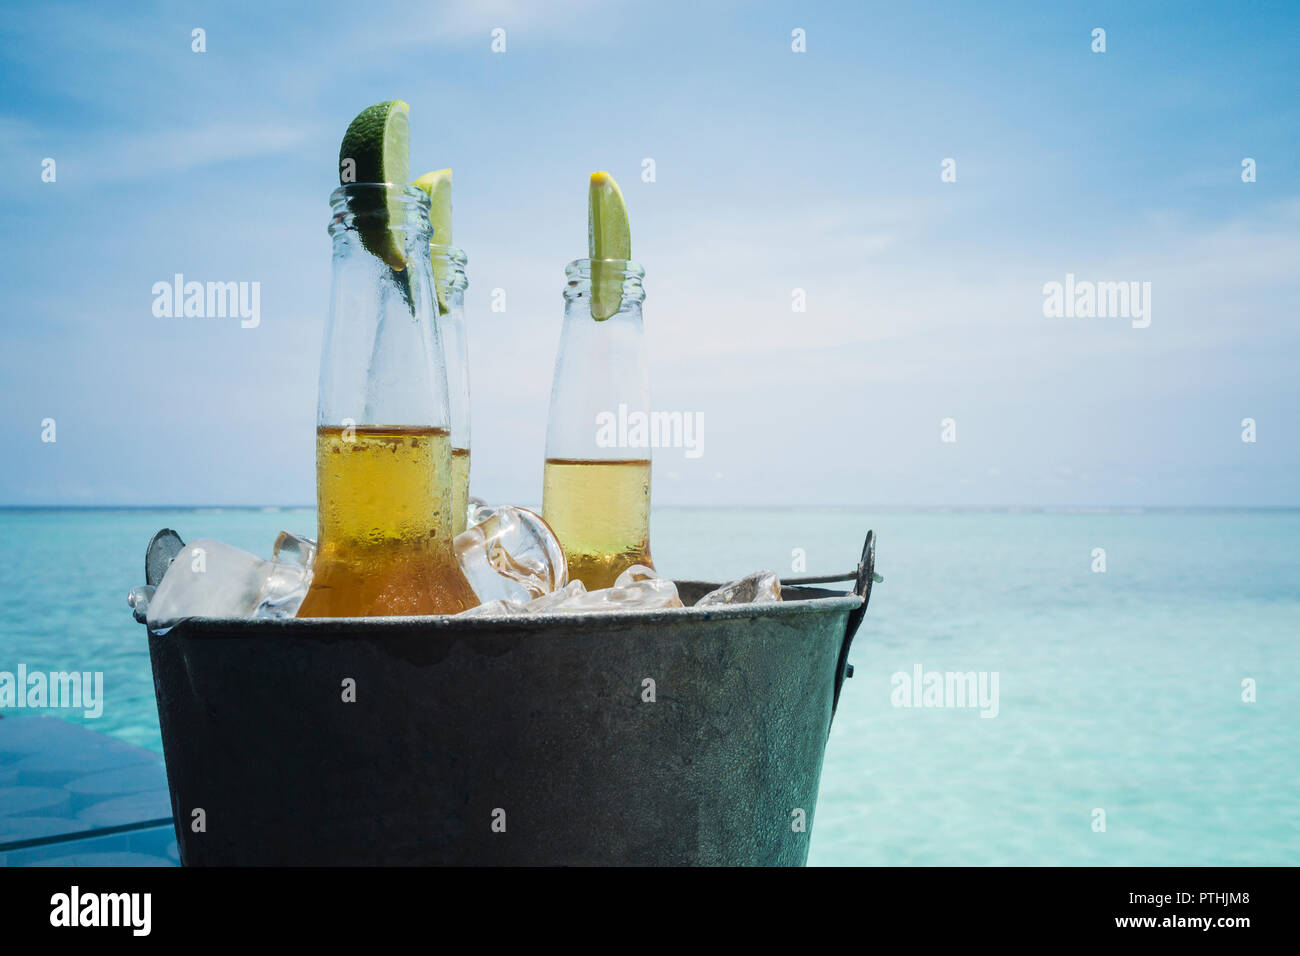 Kalk Schichten in Bier Flaschen auf Eis am ruhigen Strand, Malediven, Indischer Ozean Stockfoto